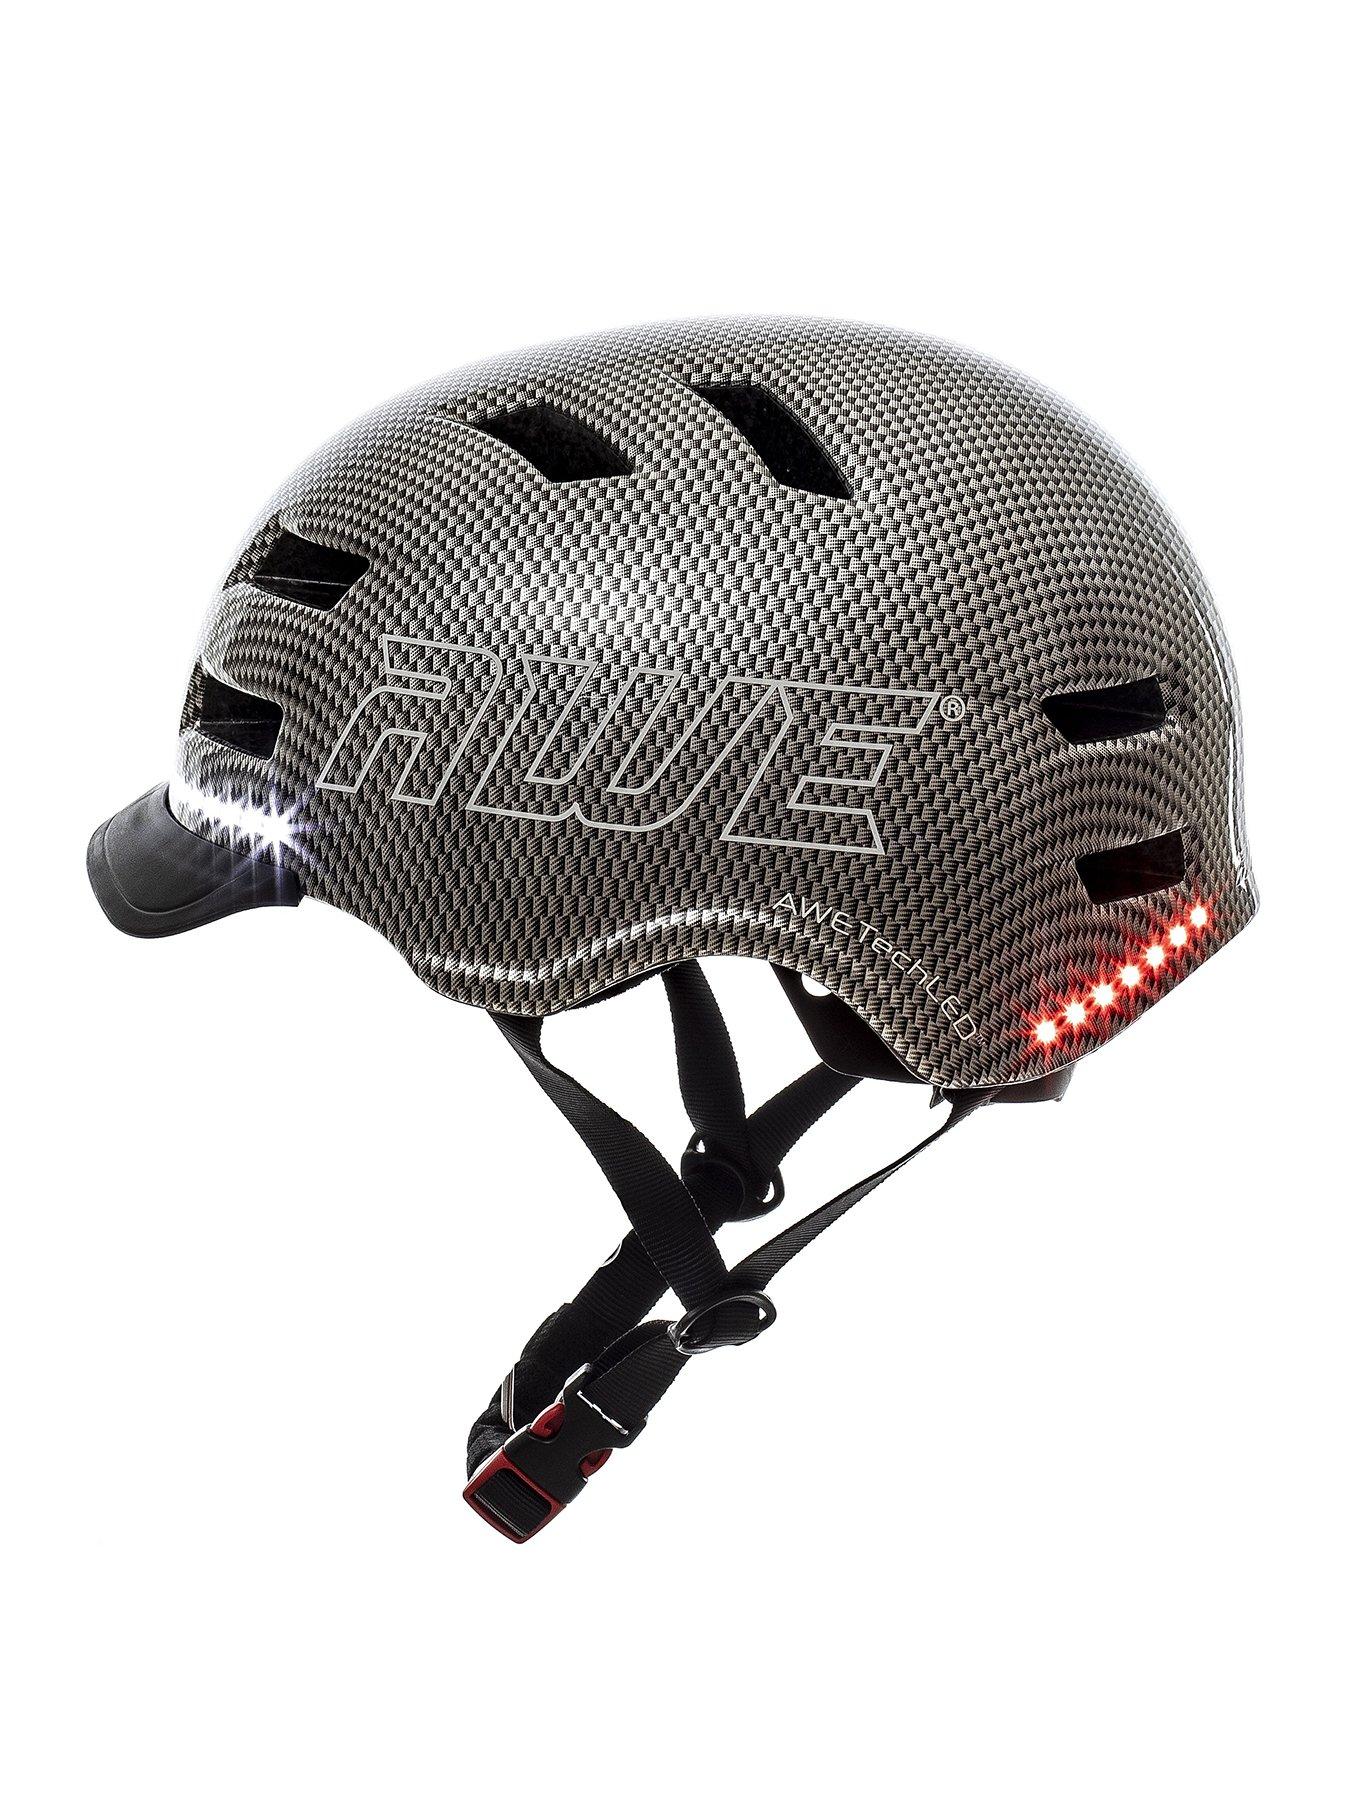 AWEAir Adult Bicycle/Bike Helmet Medium 55-58cm Black/Red CE EN1078:2012+A12012 